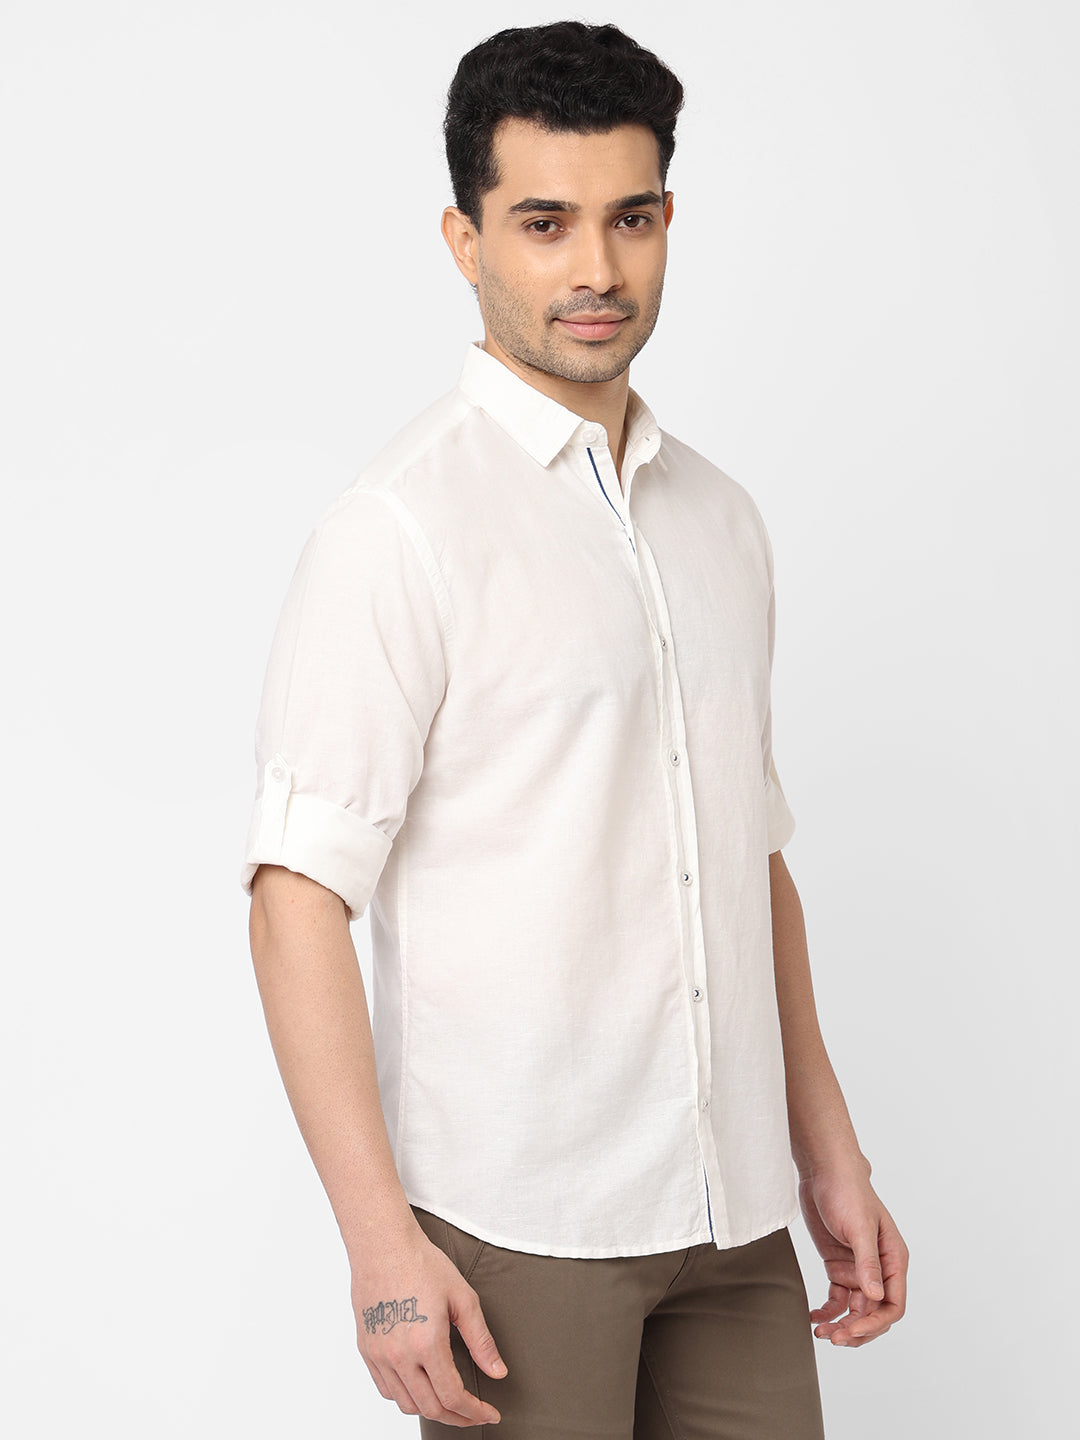 Men's White Linen Cotton Slim Fit Shirt